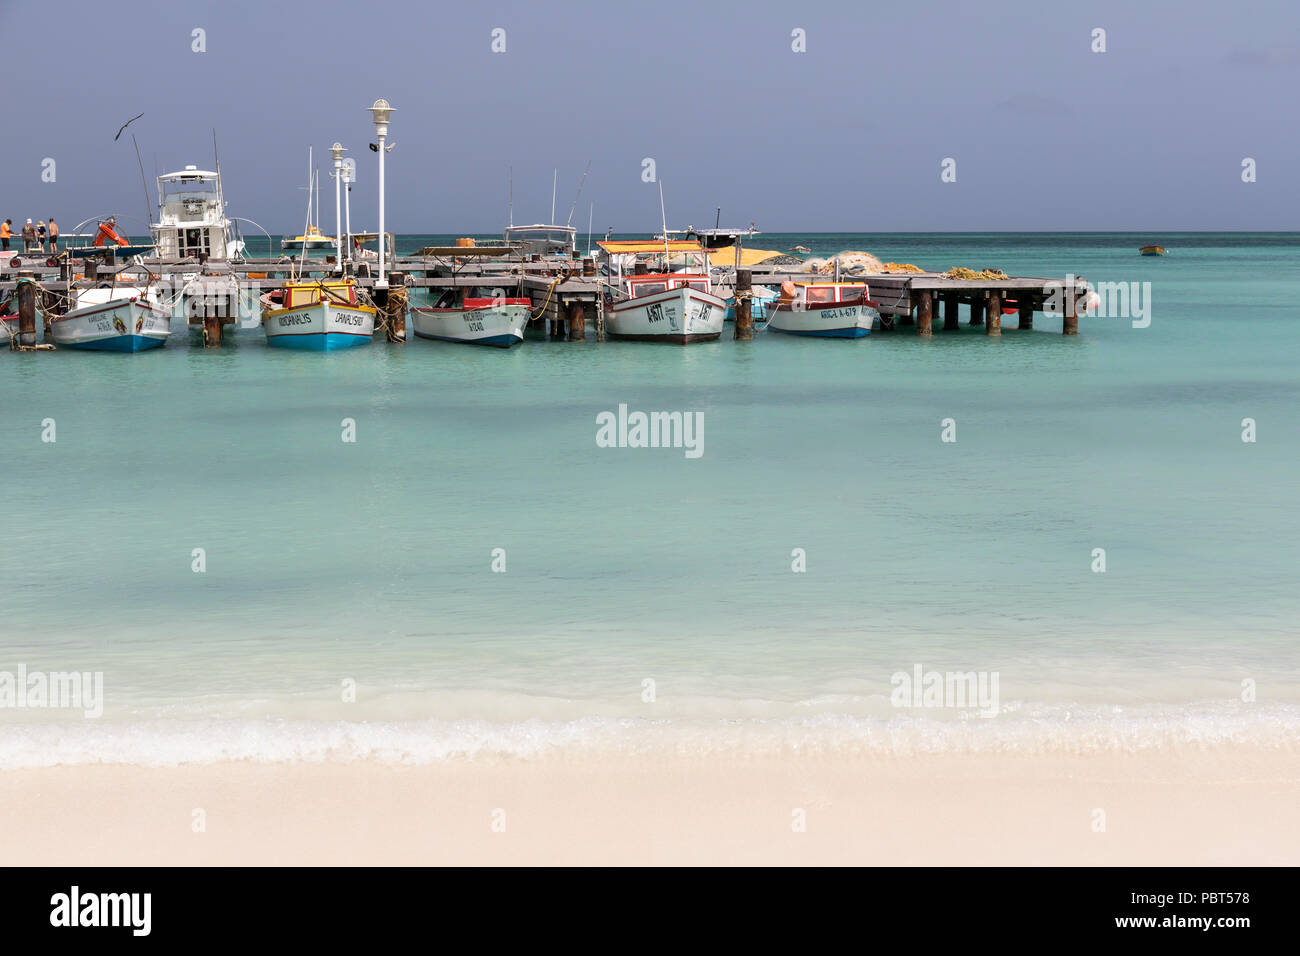 Bateaux de pêche amarrés dans la mer turquoise des Caraïbes à Palm Beach, Aruba, Caraïbes Banque D'Images